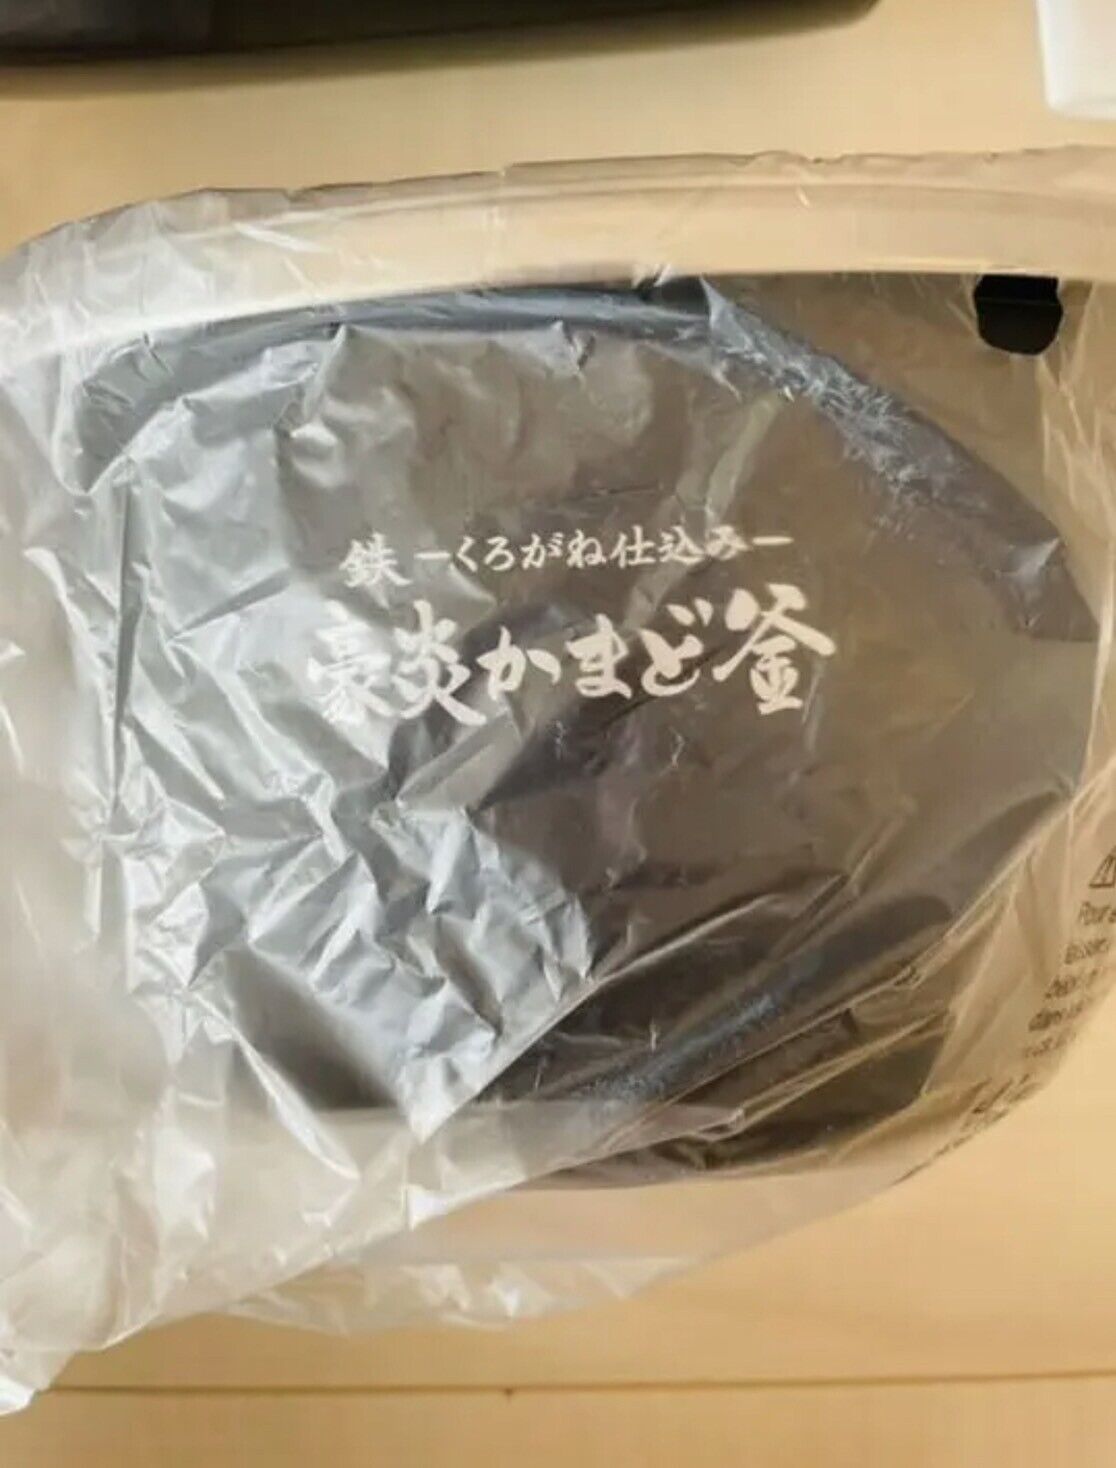 NW-KB10-BZ 100V Zojirushi Pressure IH Rice Cooker 5.5 go Black From Japan New